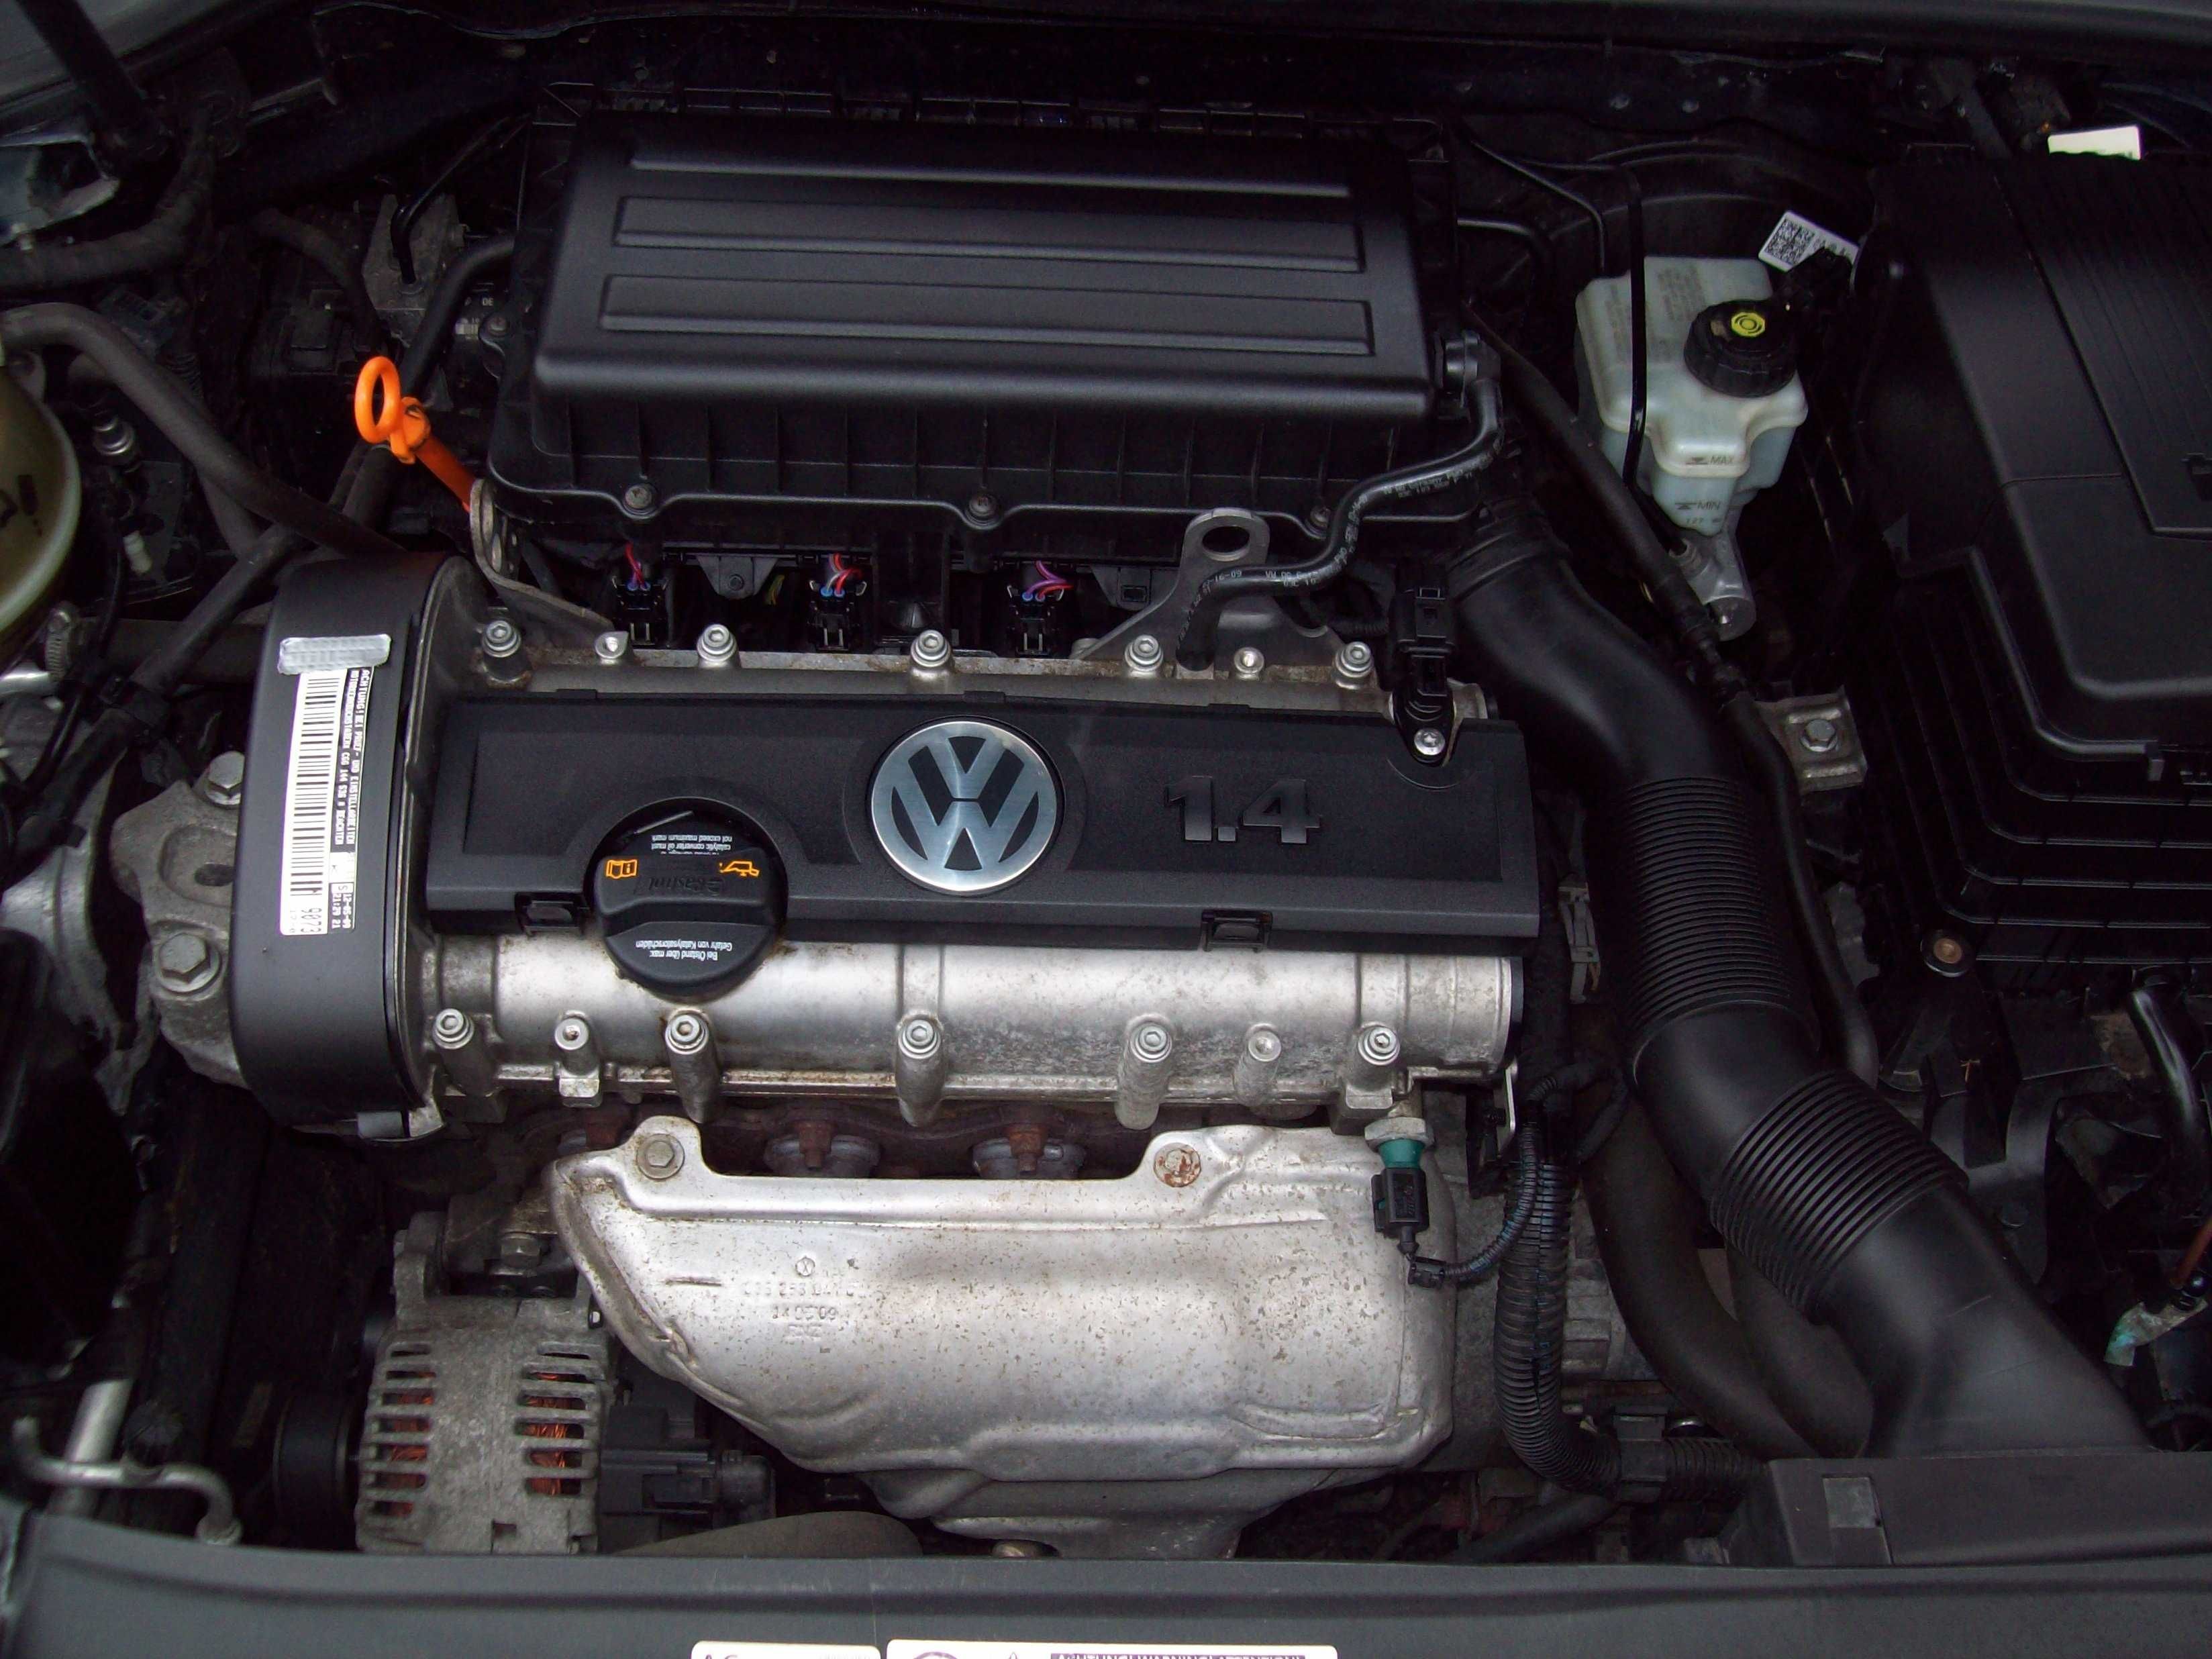 VW GOLF 6 1,4 MPI 5 drzwi/stan idealny /sprowadzony z Niemiec/opłacony